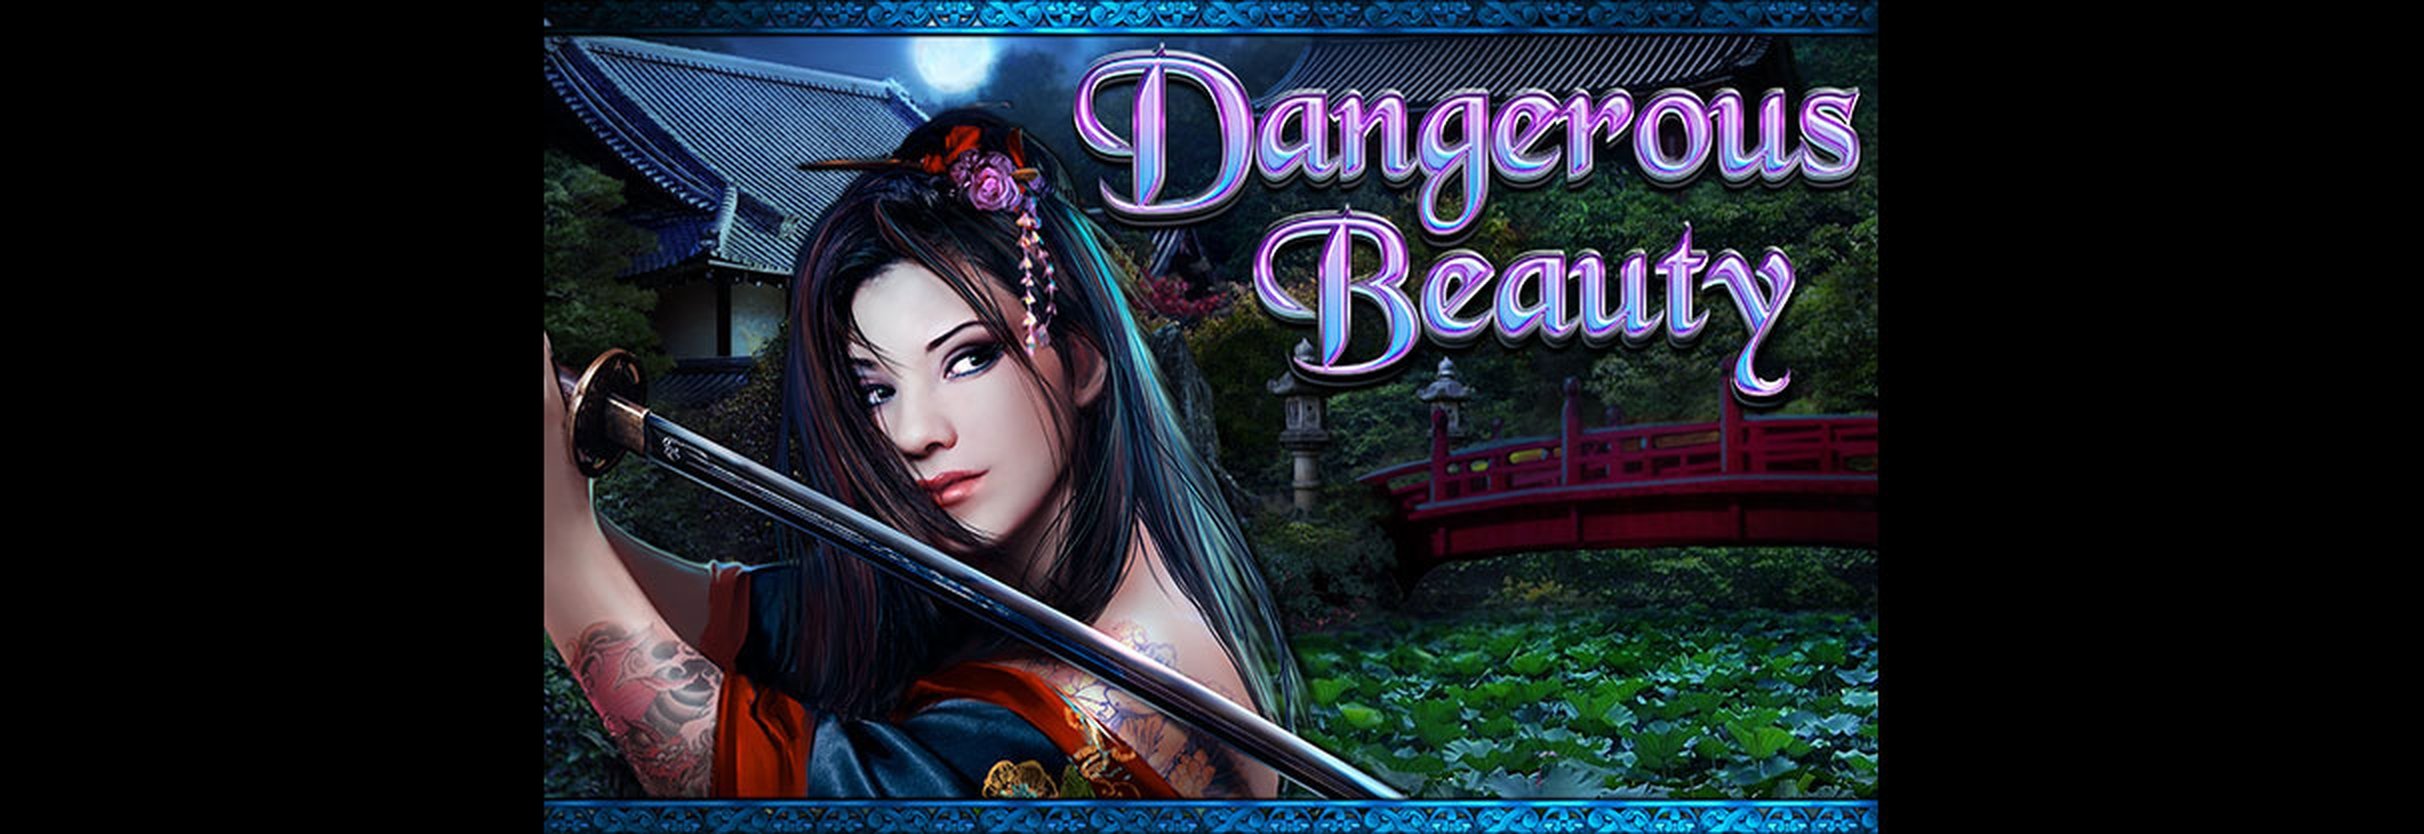 Dangerous Beauty demo